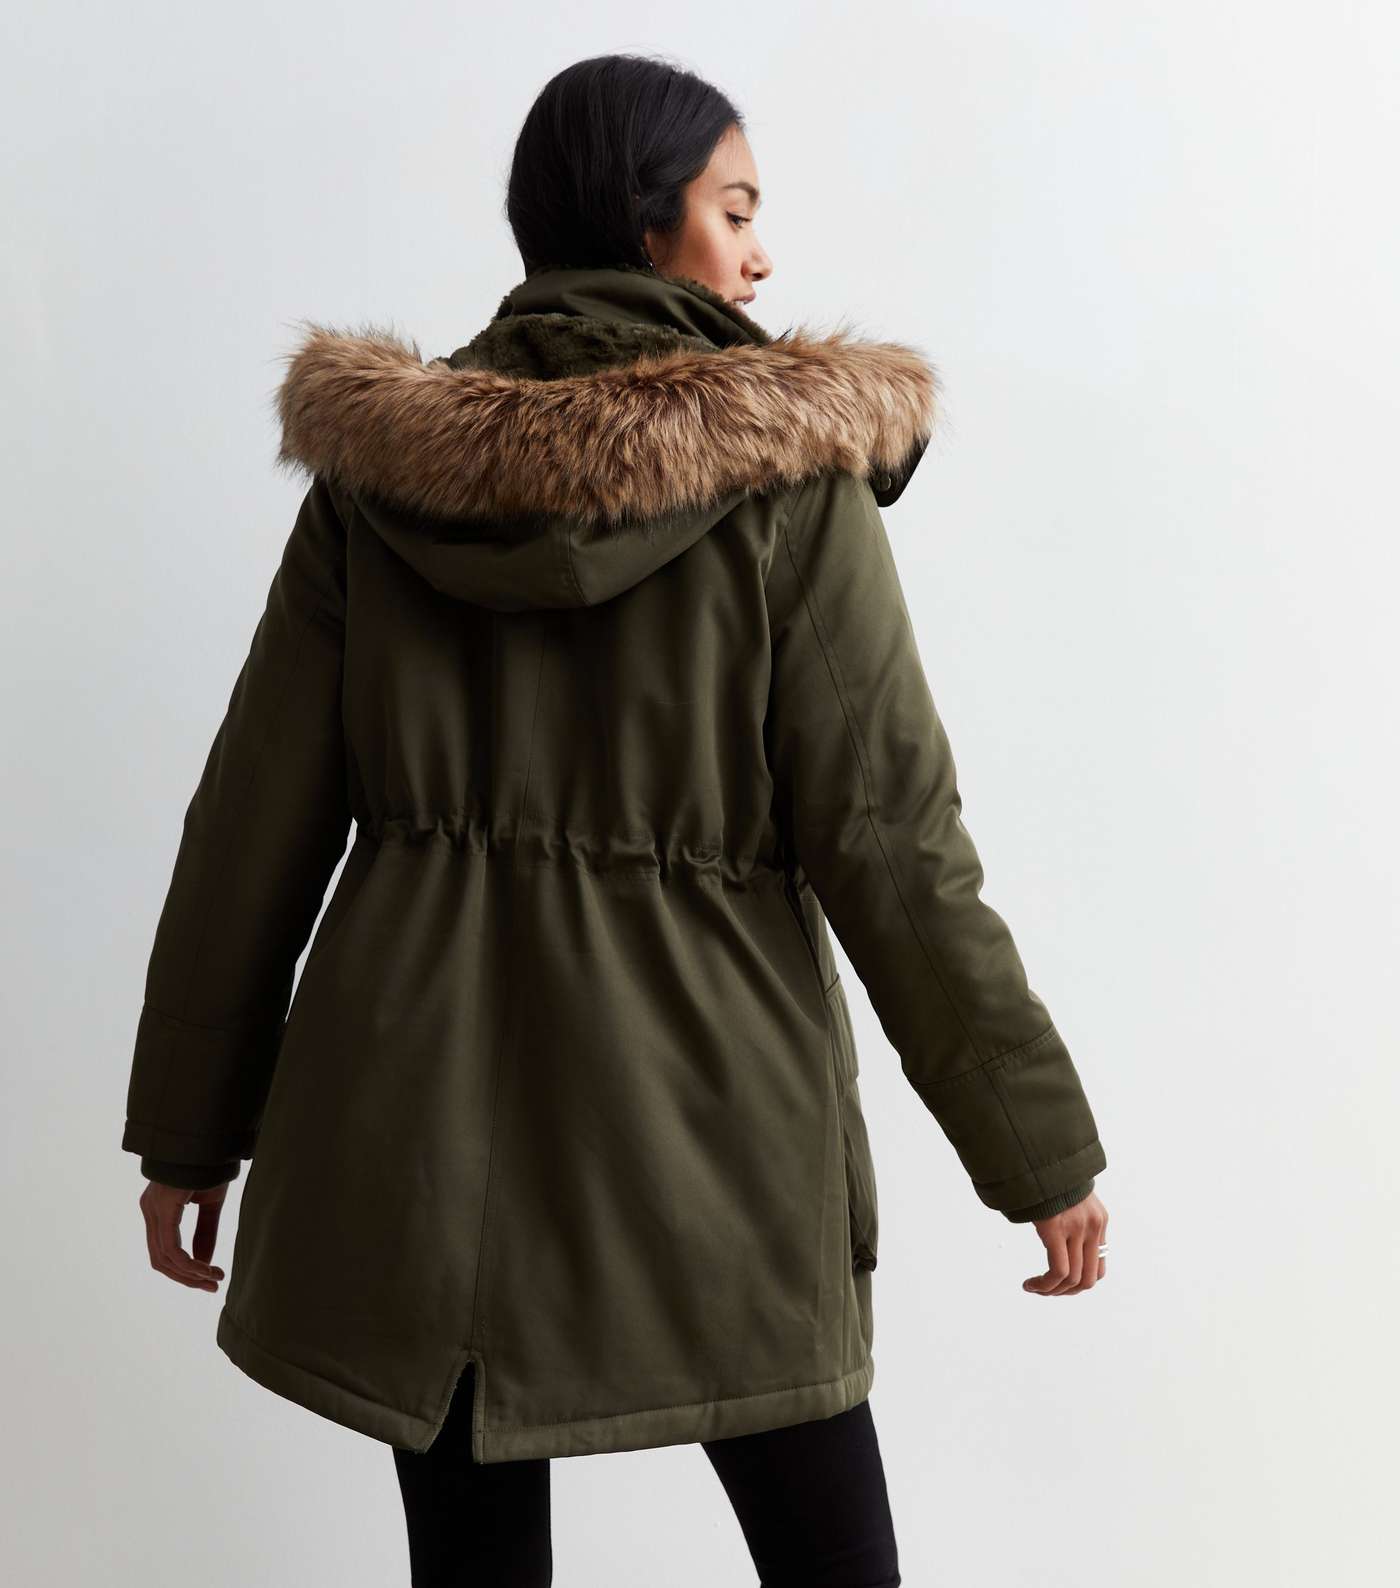 Women's All-Weather Faux Fur-Lined Parka, Women's Jackets & Coats